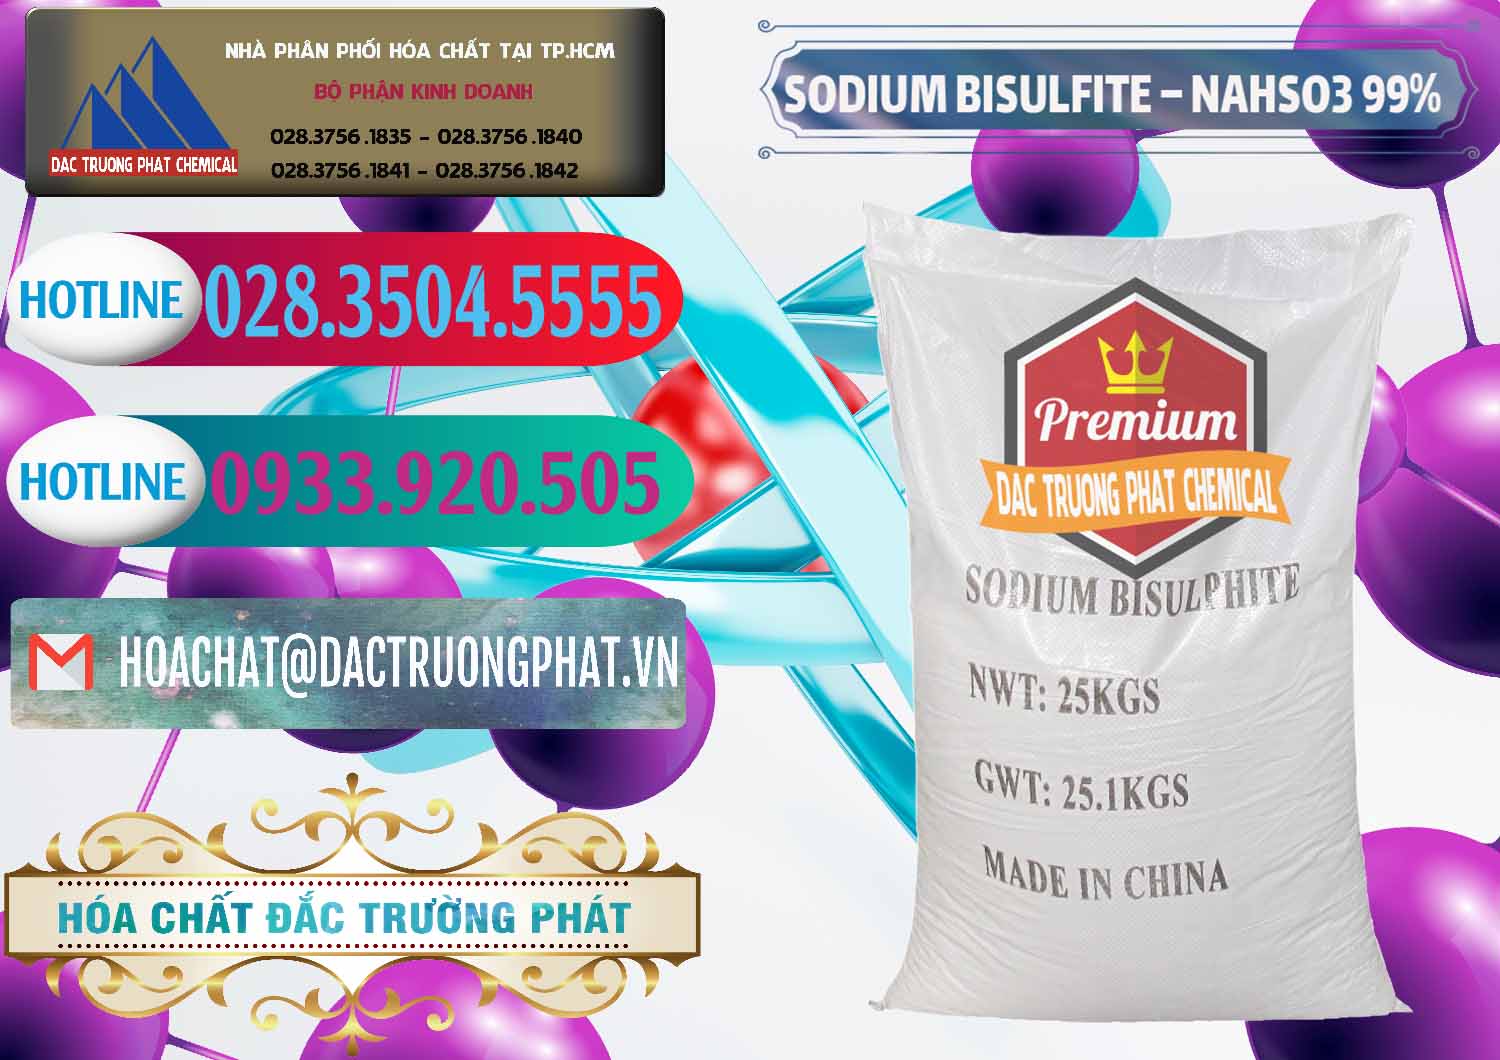 Nhà cung cấp - bán Sodium Bisulfite – NAHSO3 Trung Quốc China - 0140 - Đơn vị bán - cung cấp hóa chất tại TP.HCM - truongphat.vn